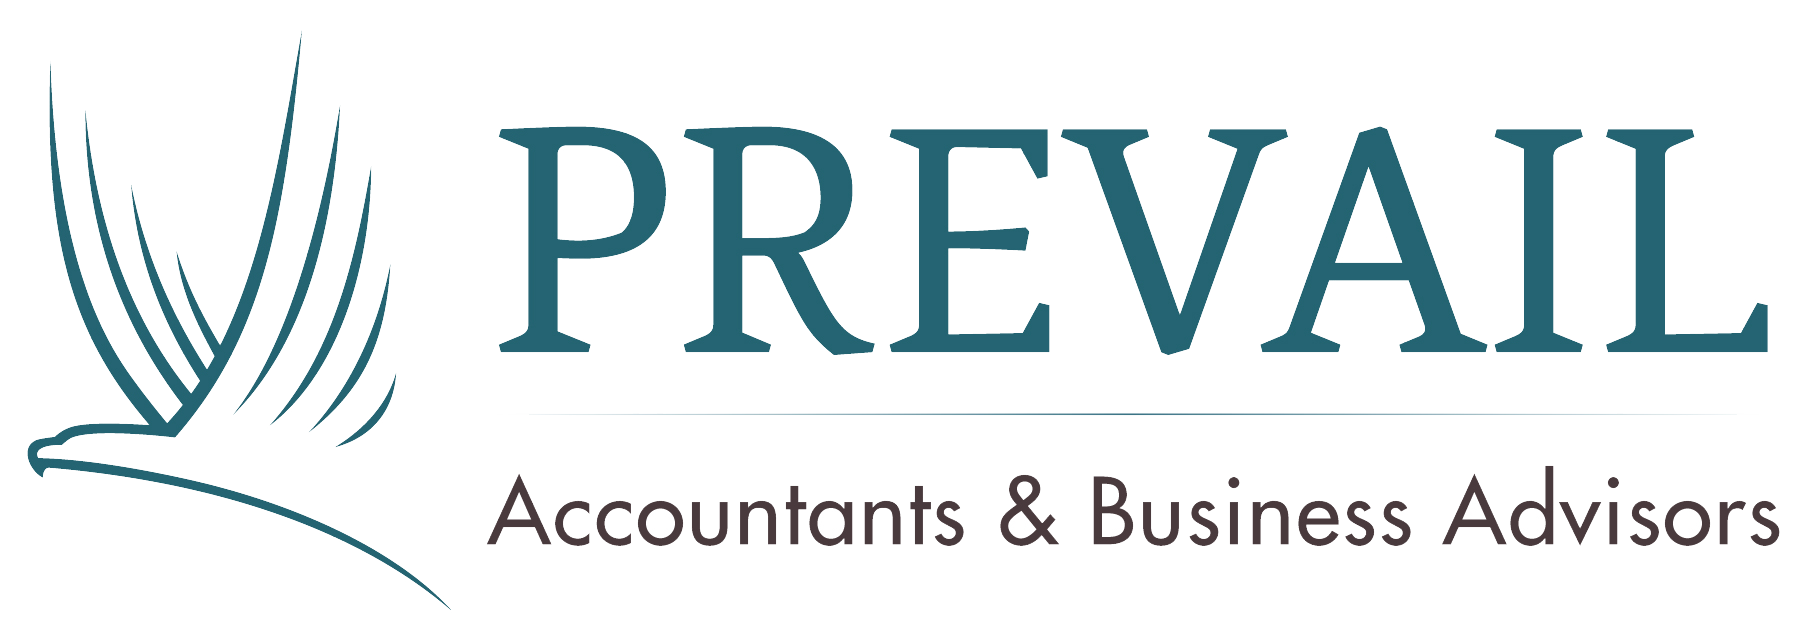 Prevail_Logo_BusinessAdvisors_LARGE